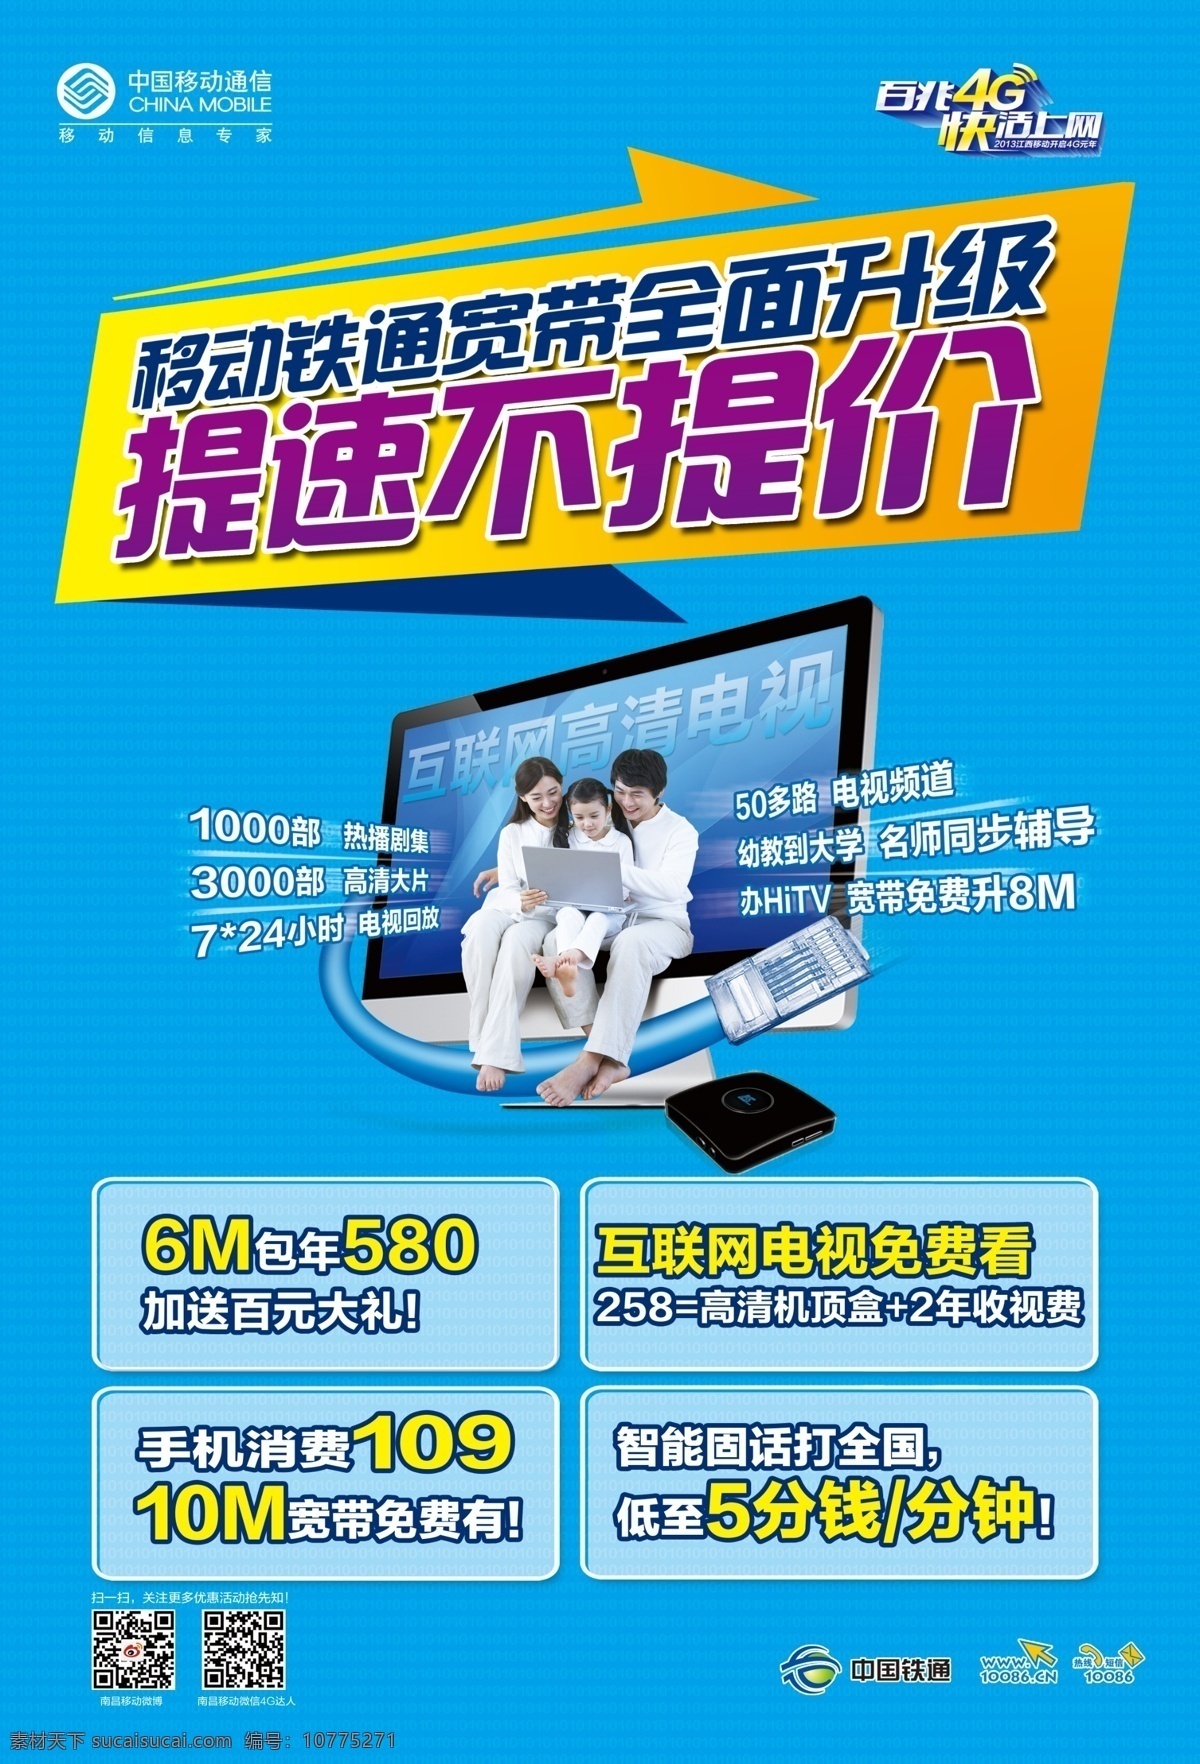 4g 广告设计模板 宽带 套餐 移动 移动宽带 源文件 中国移动 模板下载 中国移动宽带 资费 4g资费 提速 其他海报设计